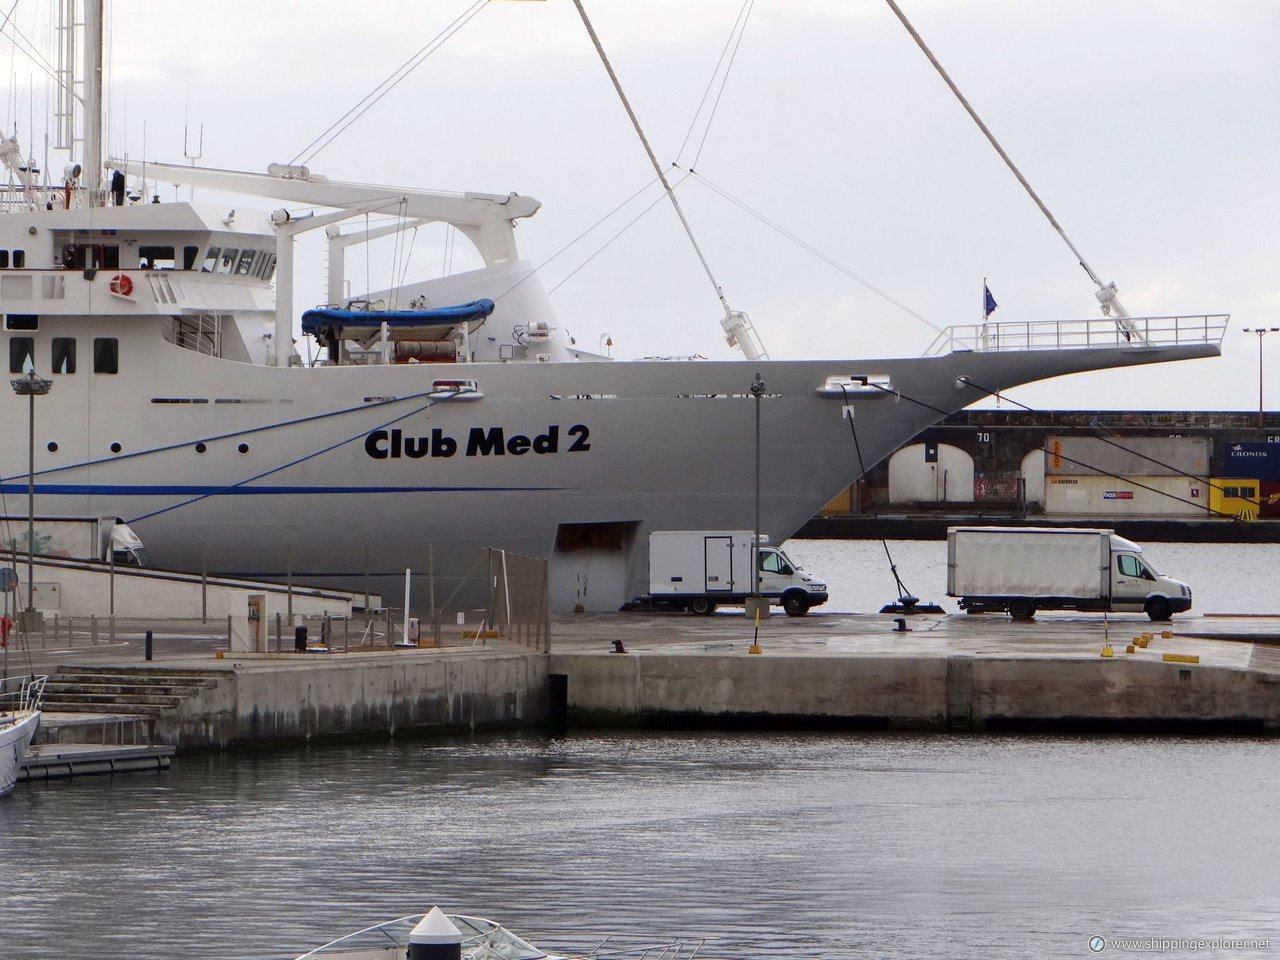 Club Med 2